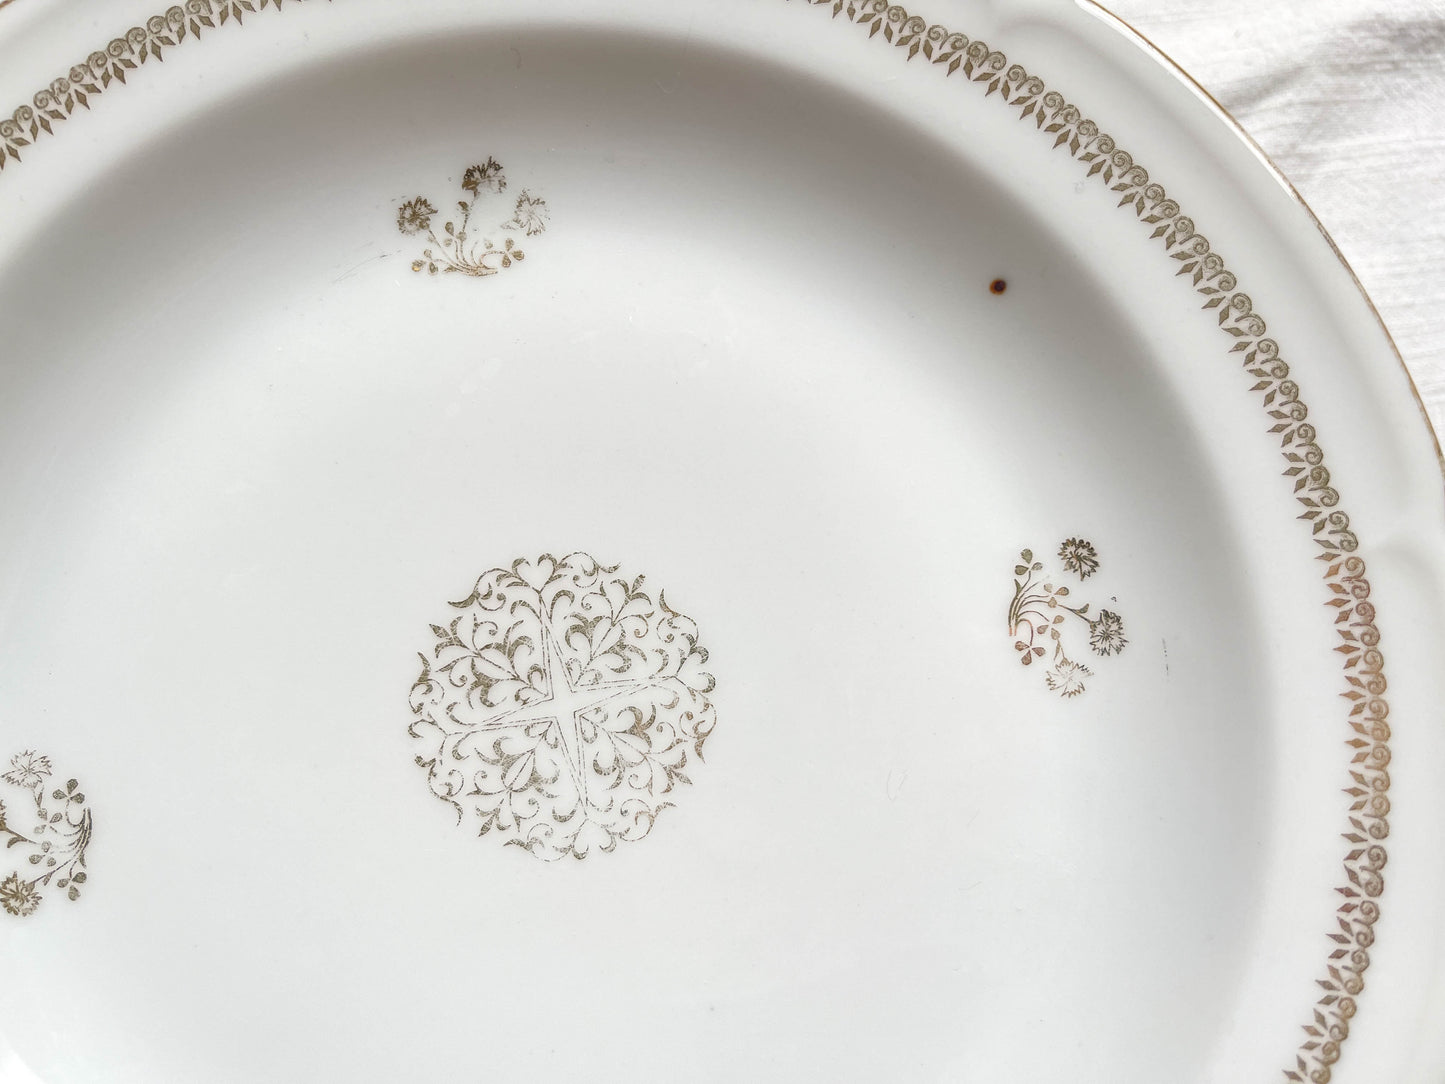 Assiettes creuses porcelaine vintage Française motif rosace dorées